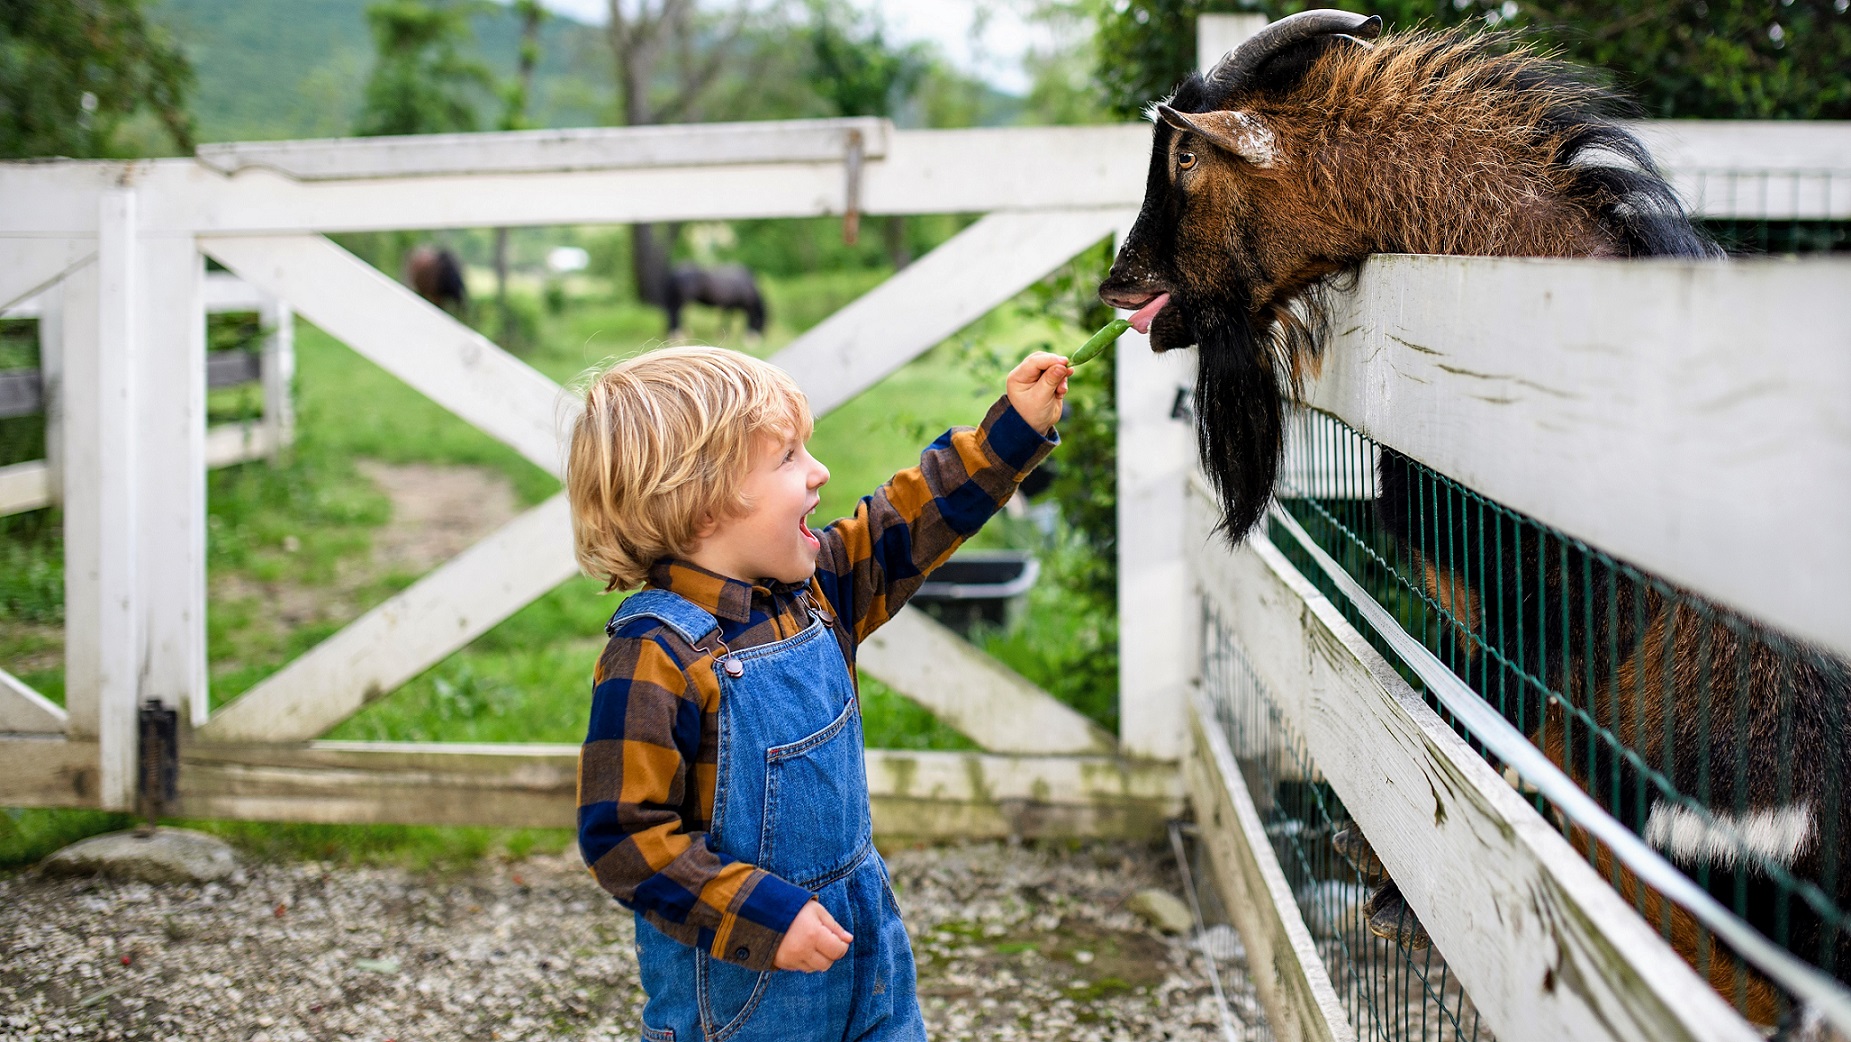 En dreng ser begejstret ud, idet han fodrer en ged